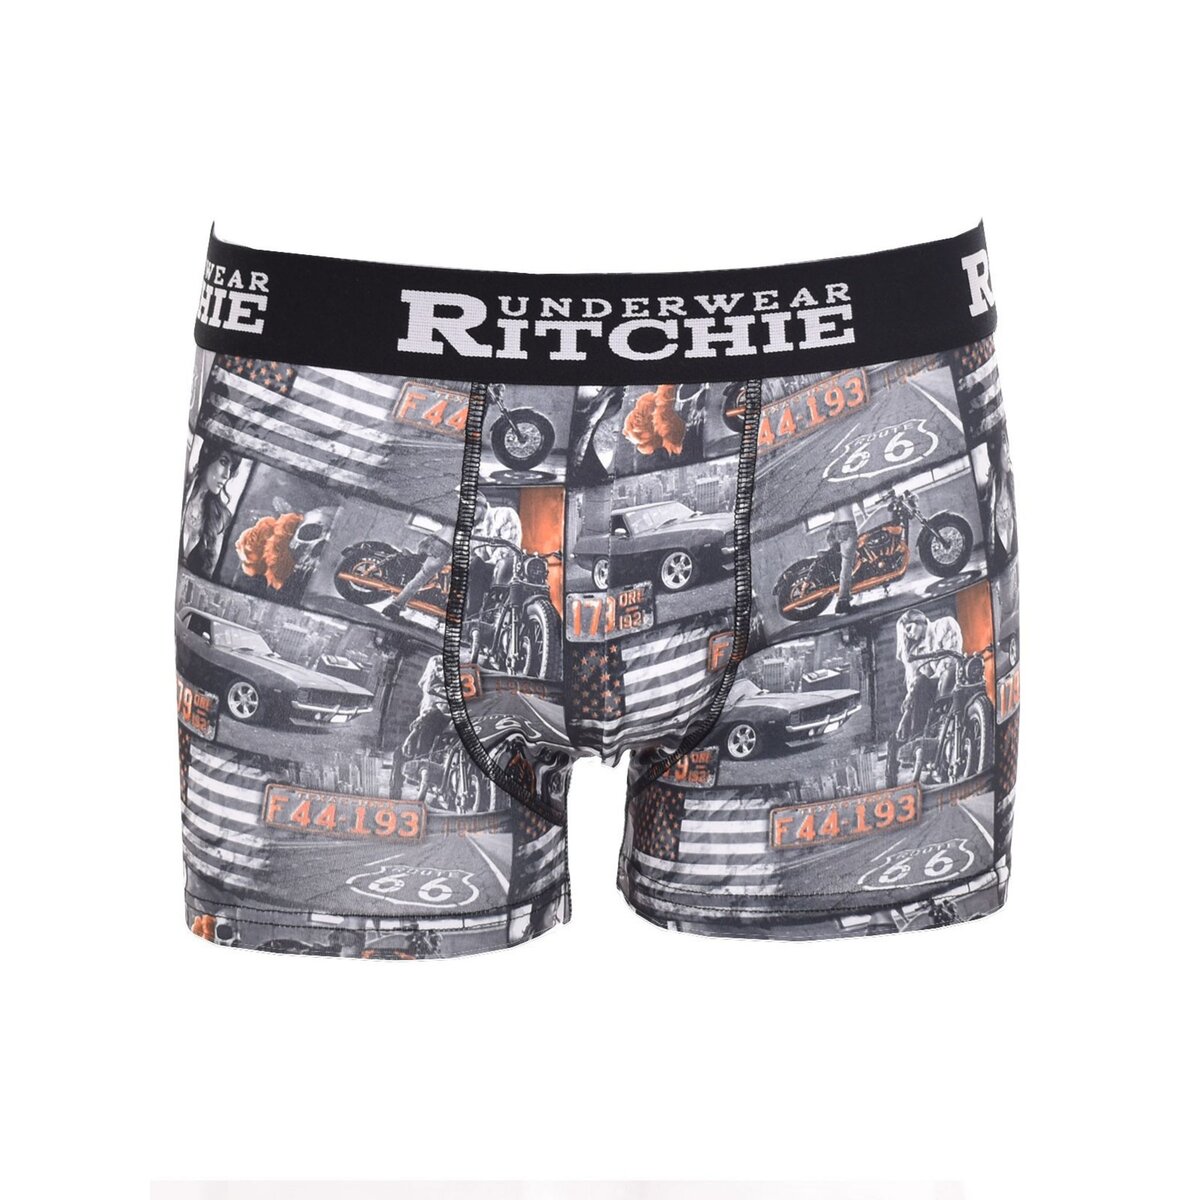 Ritchie boxer motifs ryane